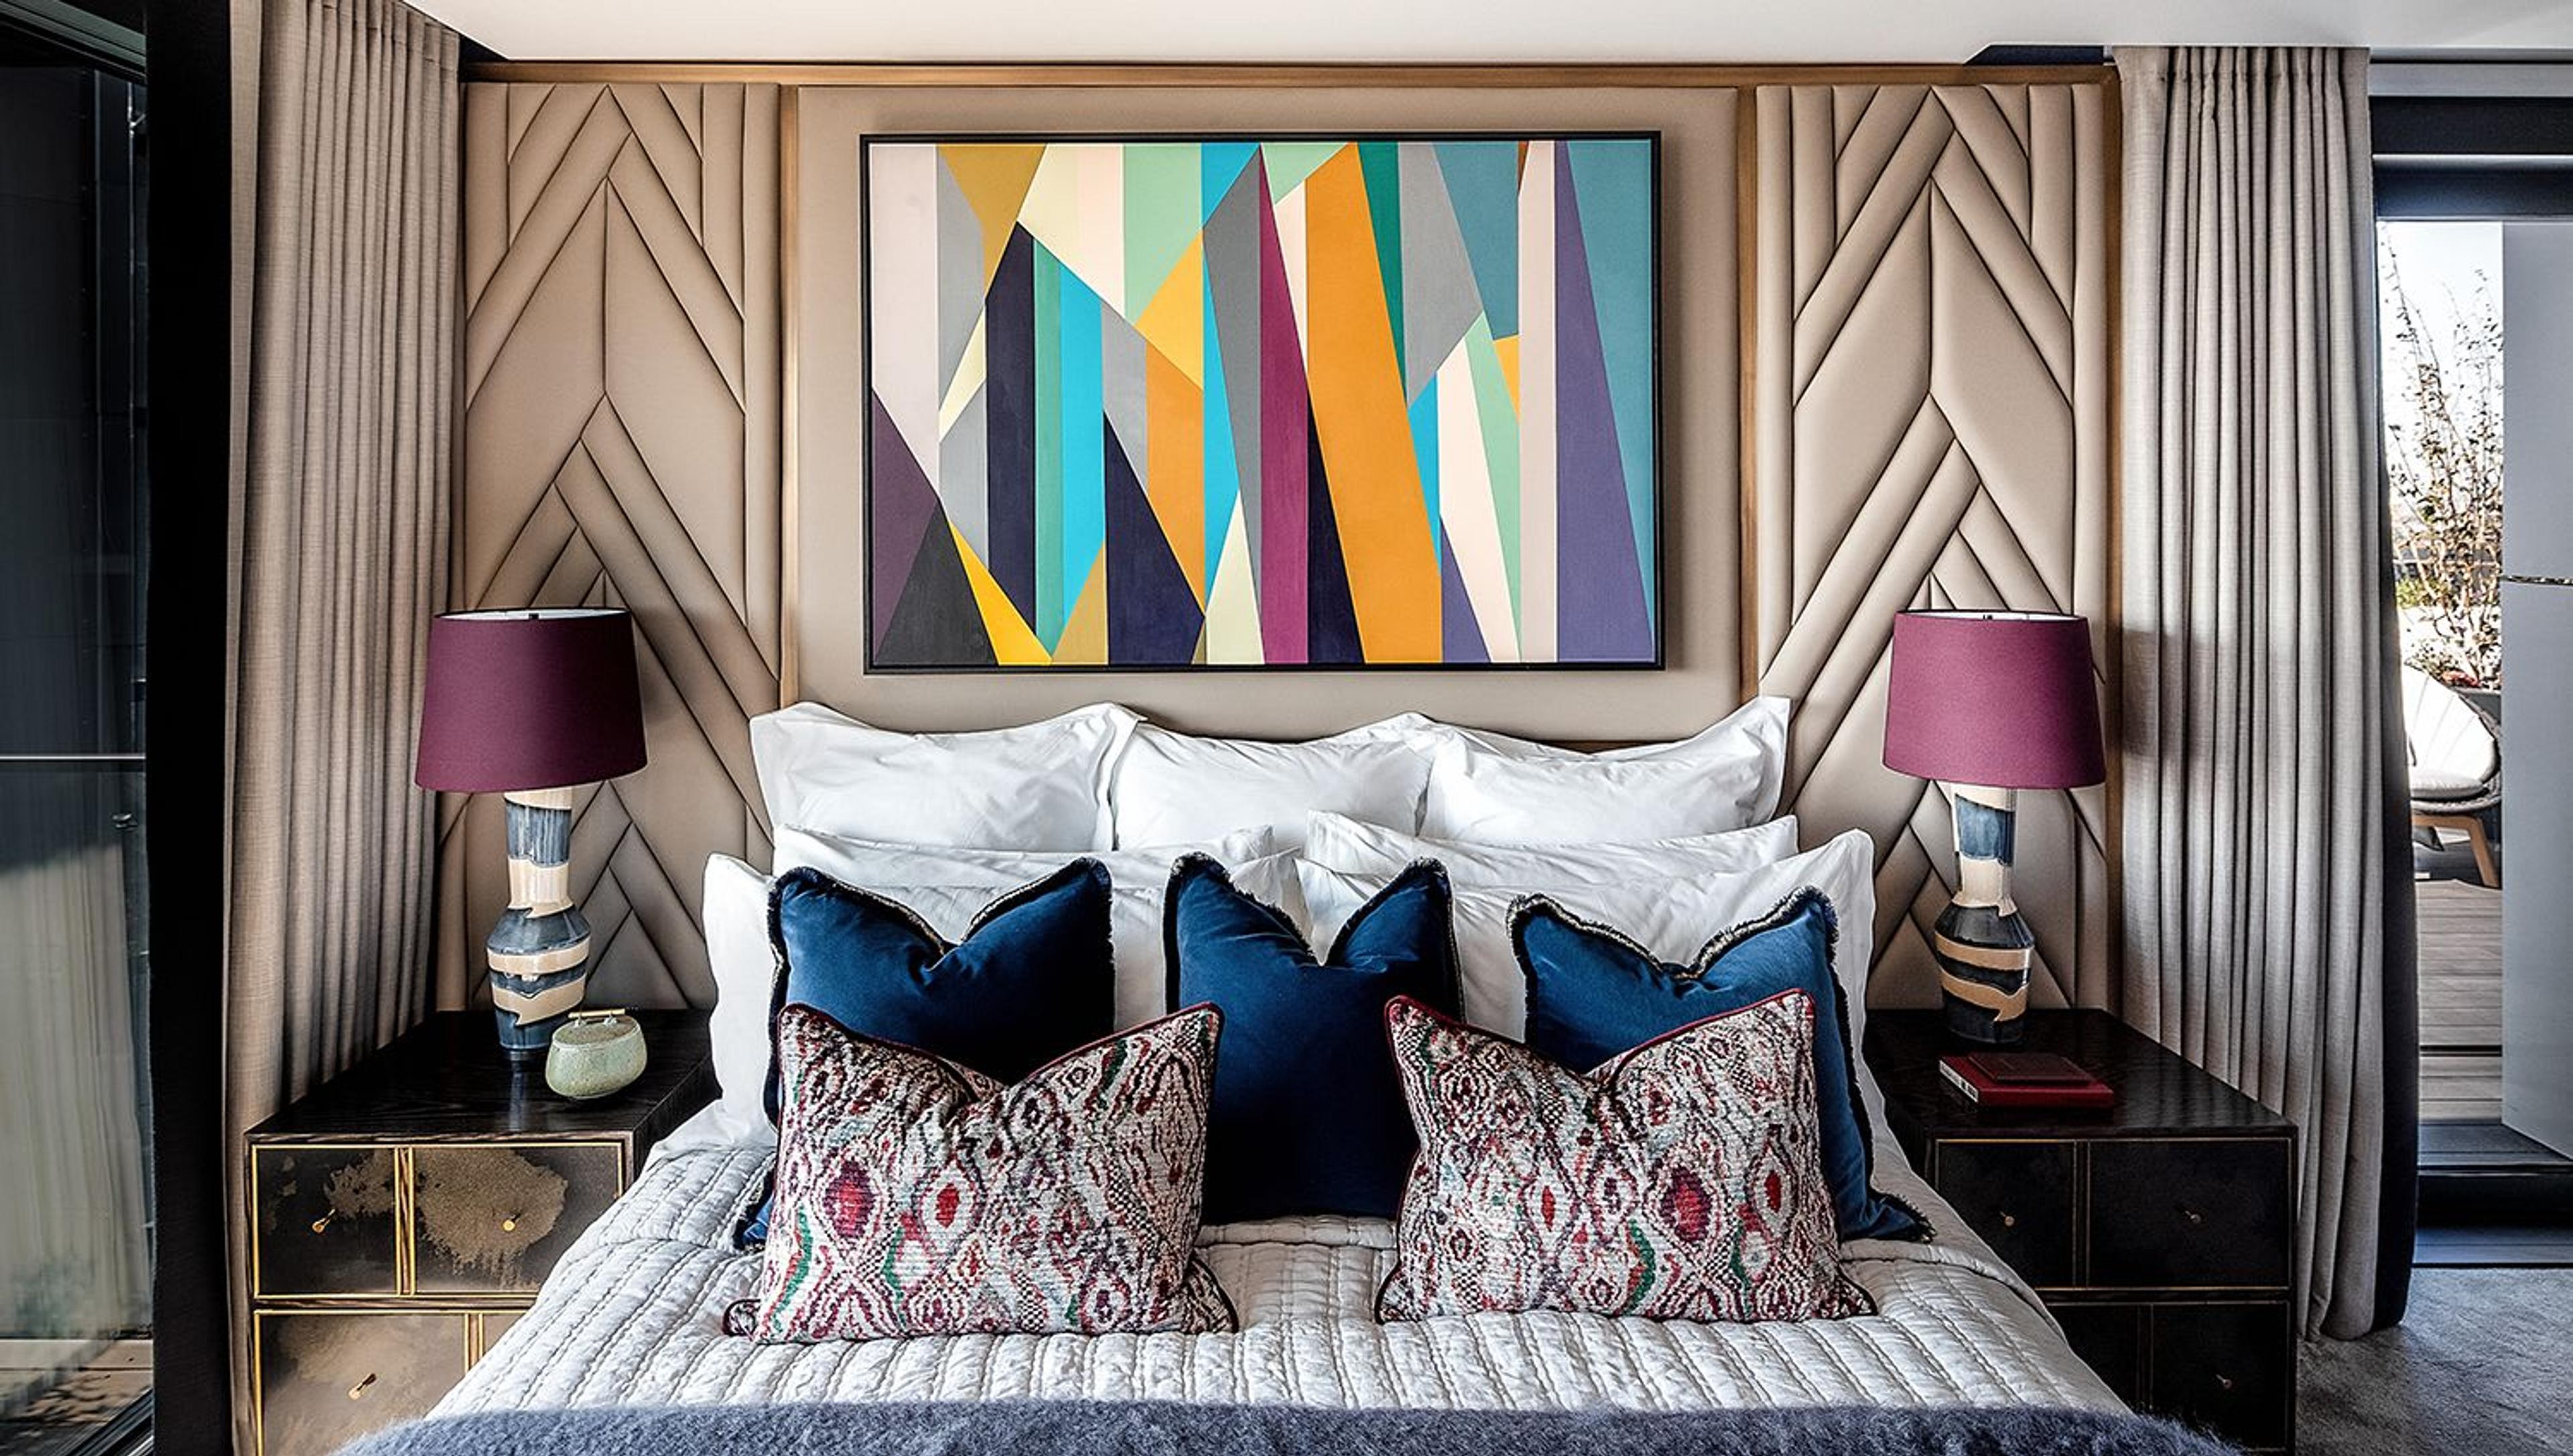 The Dumont, Blue Bedroom: Farben, Texturen und Muster im Gästezimmer